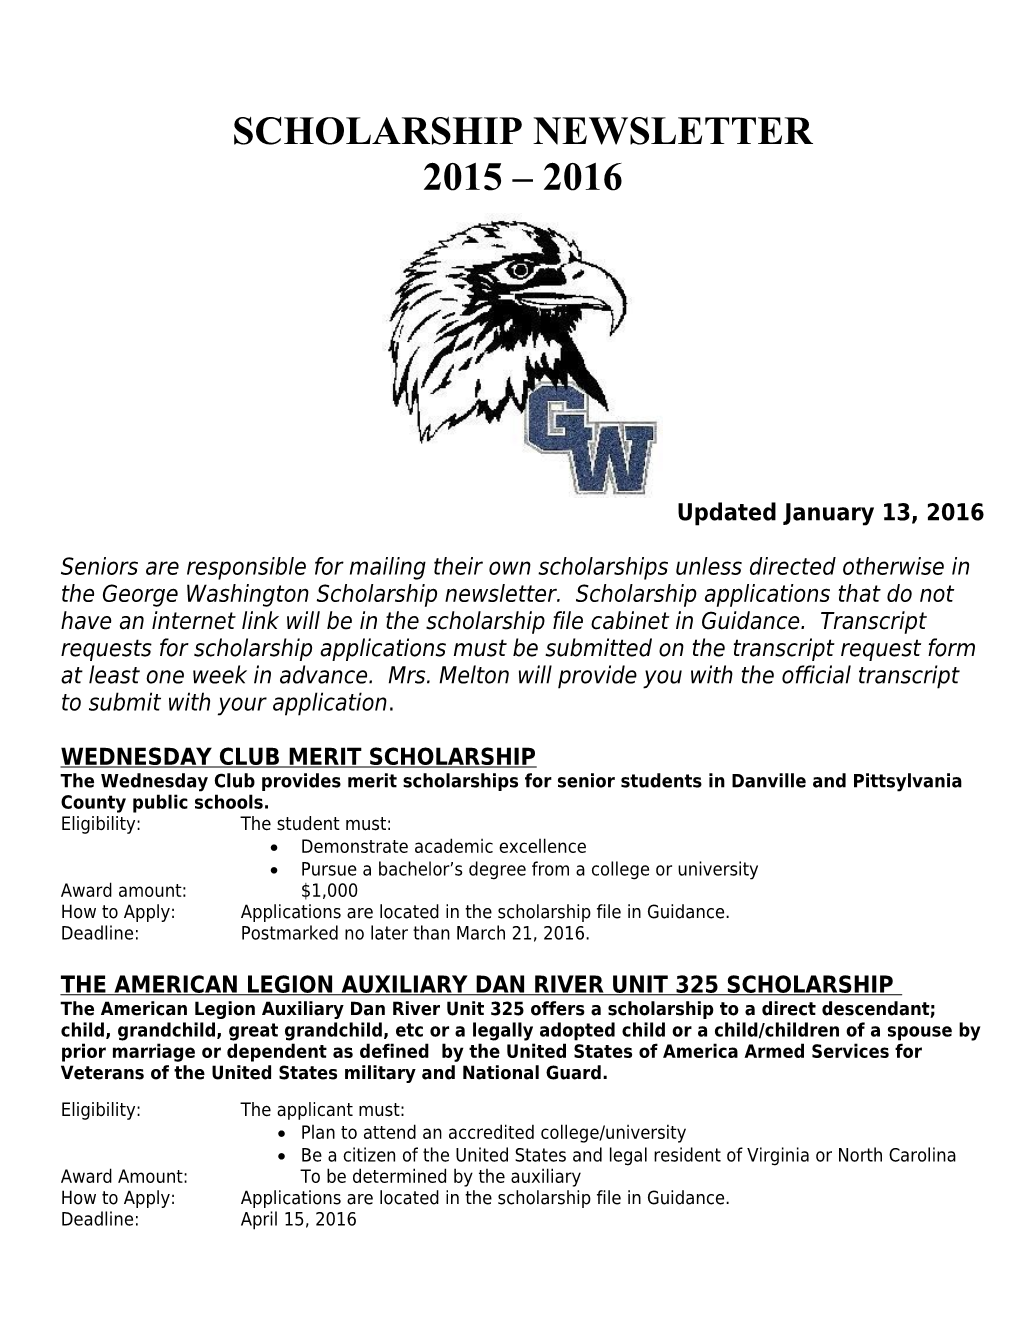 Wednesday Club Merit Scholarship